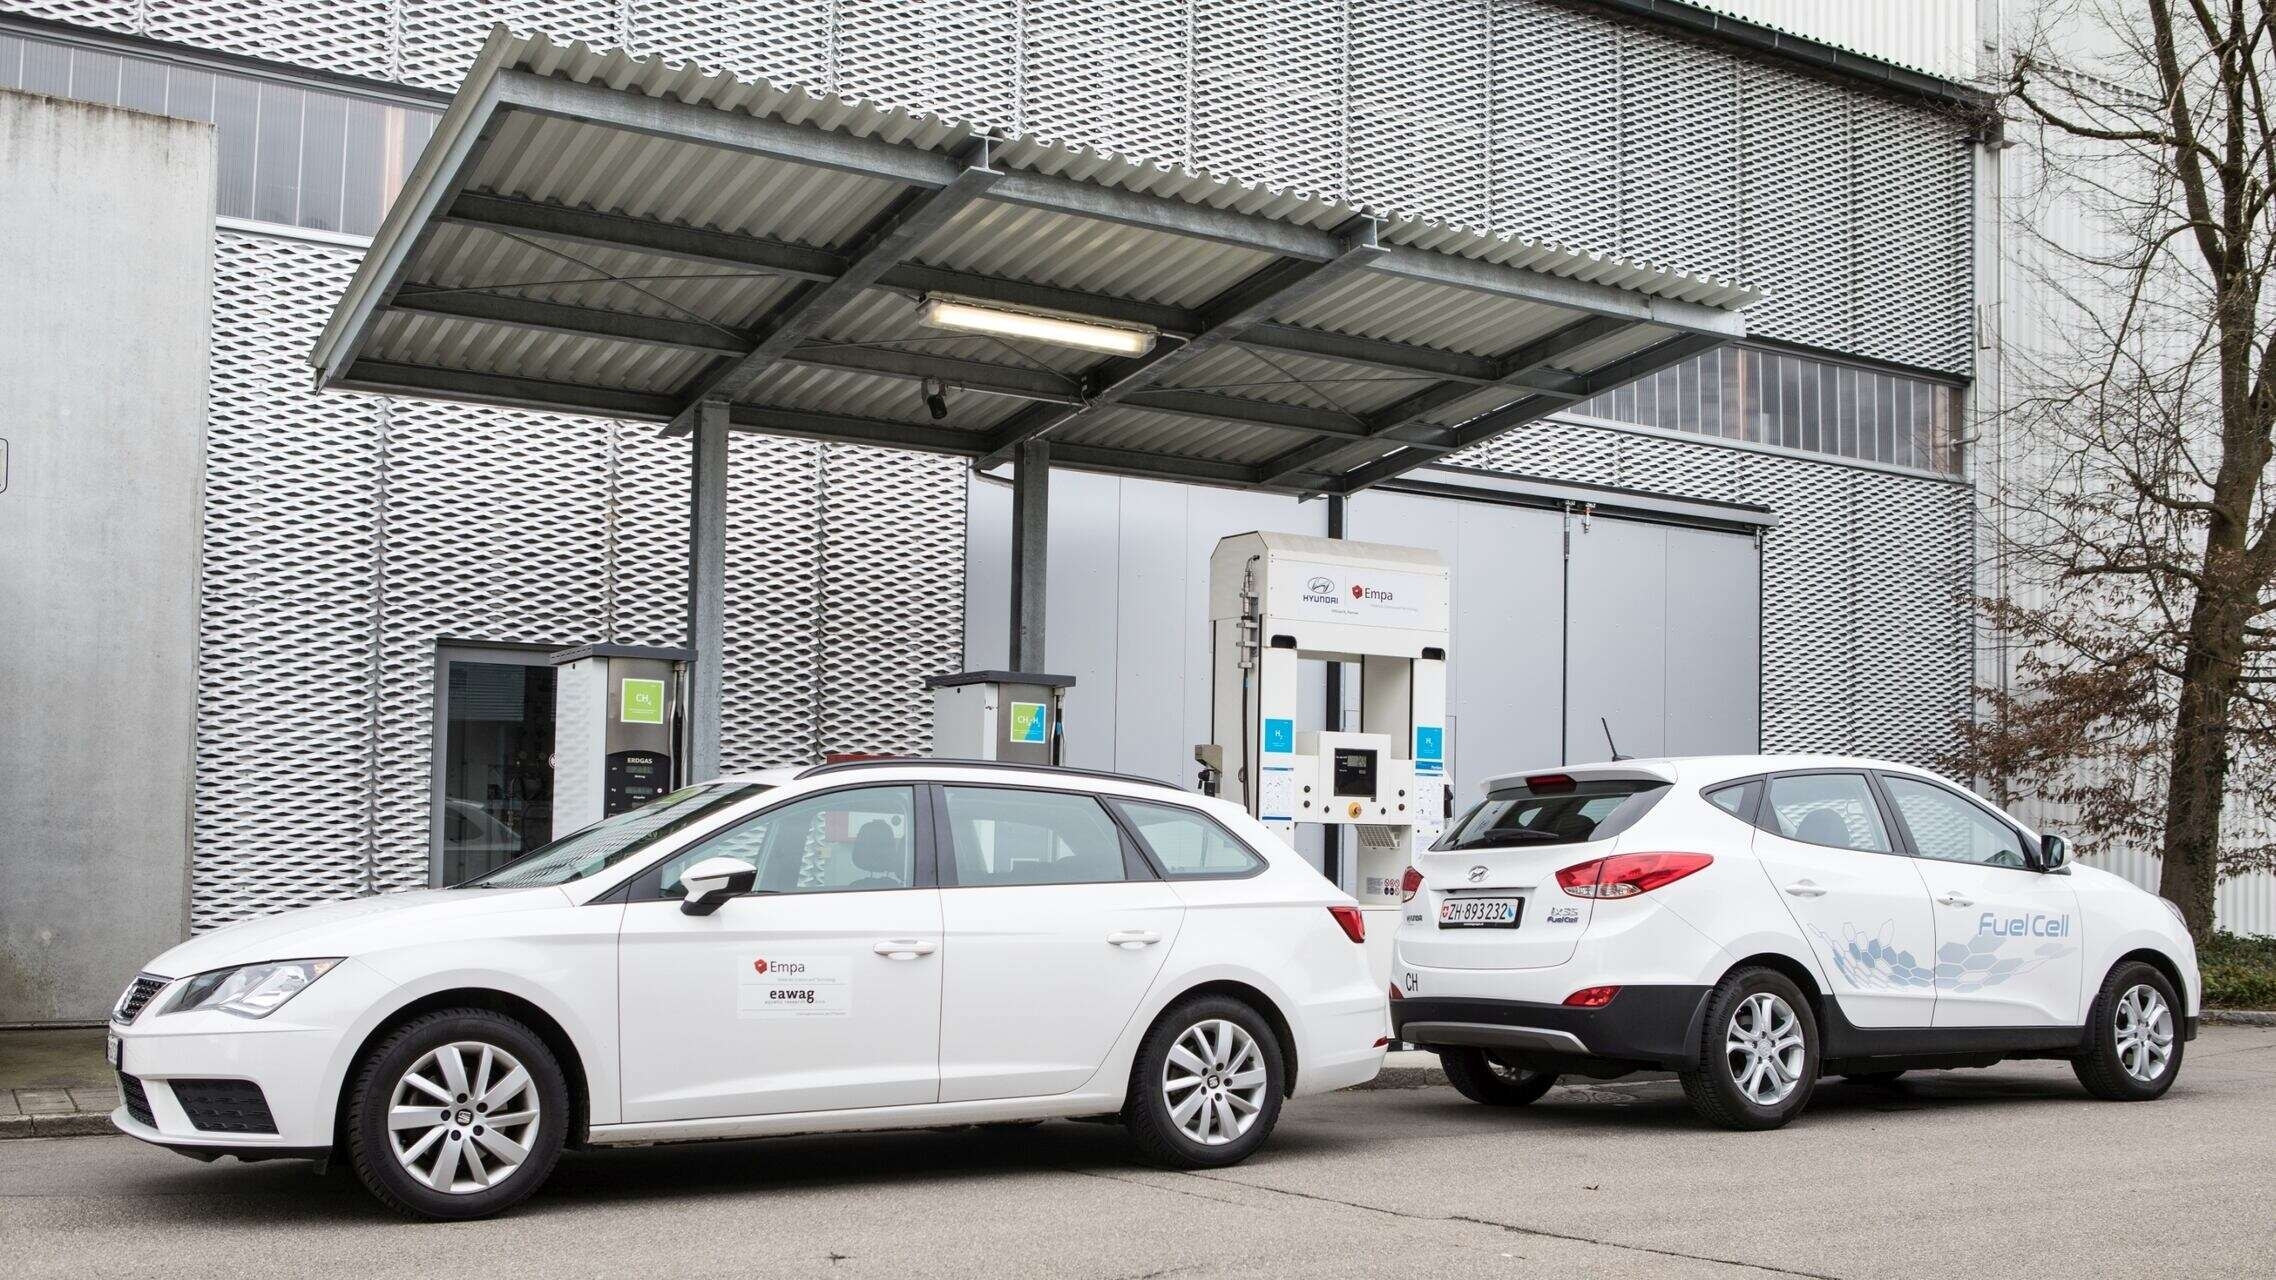 Електрична мобилност: Како се возила на ЦНГ пореде са возилима на горивне ћелије и електричним возилима на батерије?